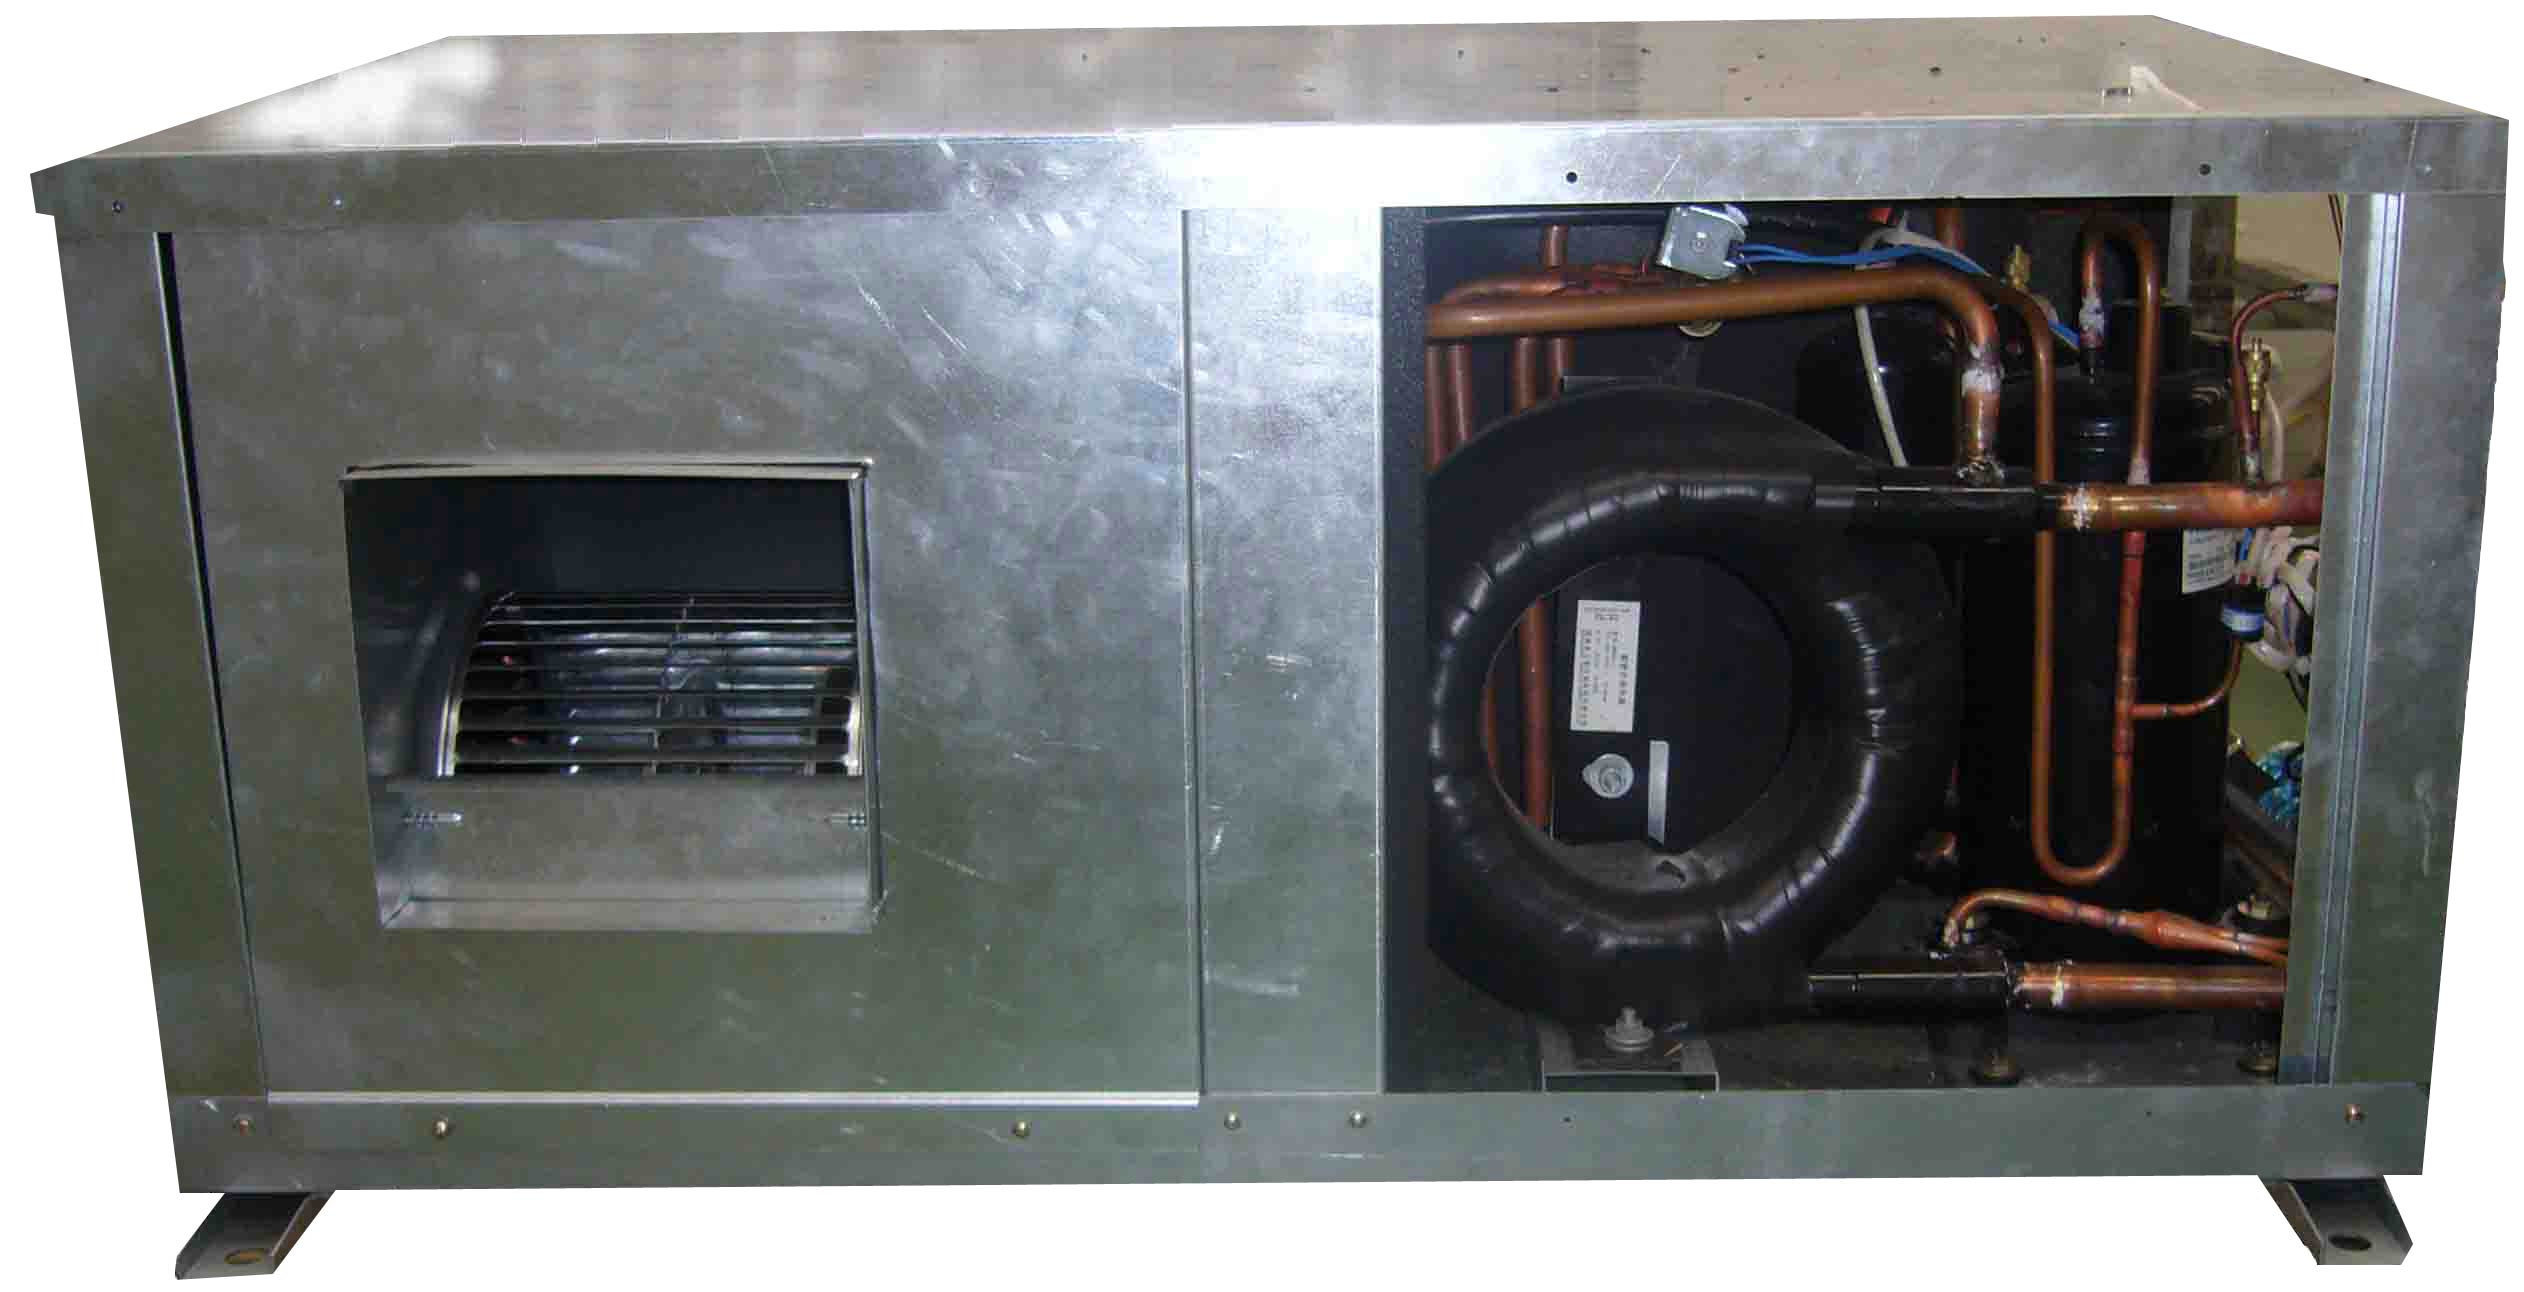  Water Source Heat Pump Air Conditioners (Тепловых водных насосов Кодиционеры)